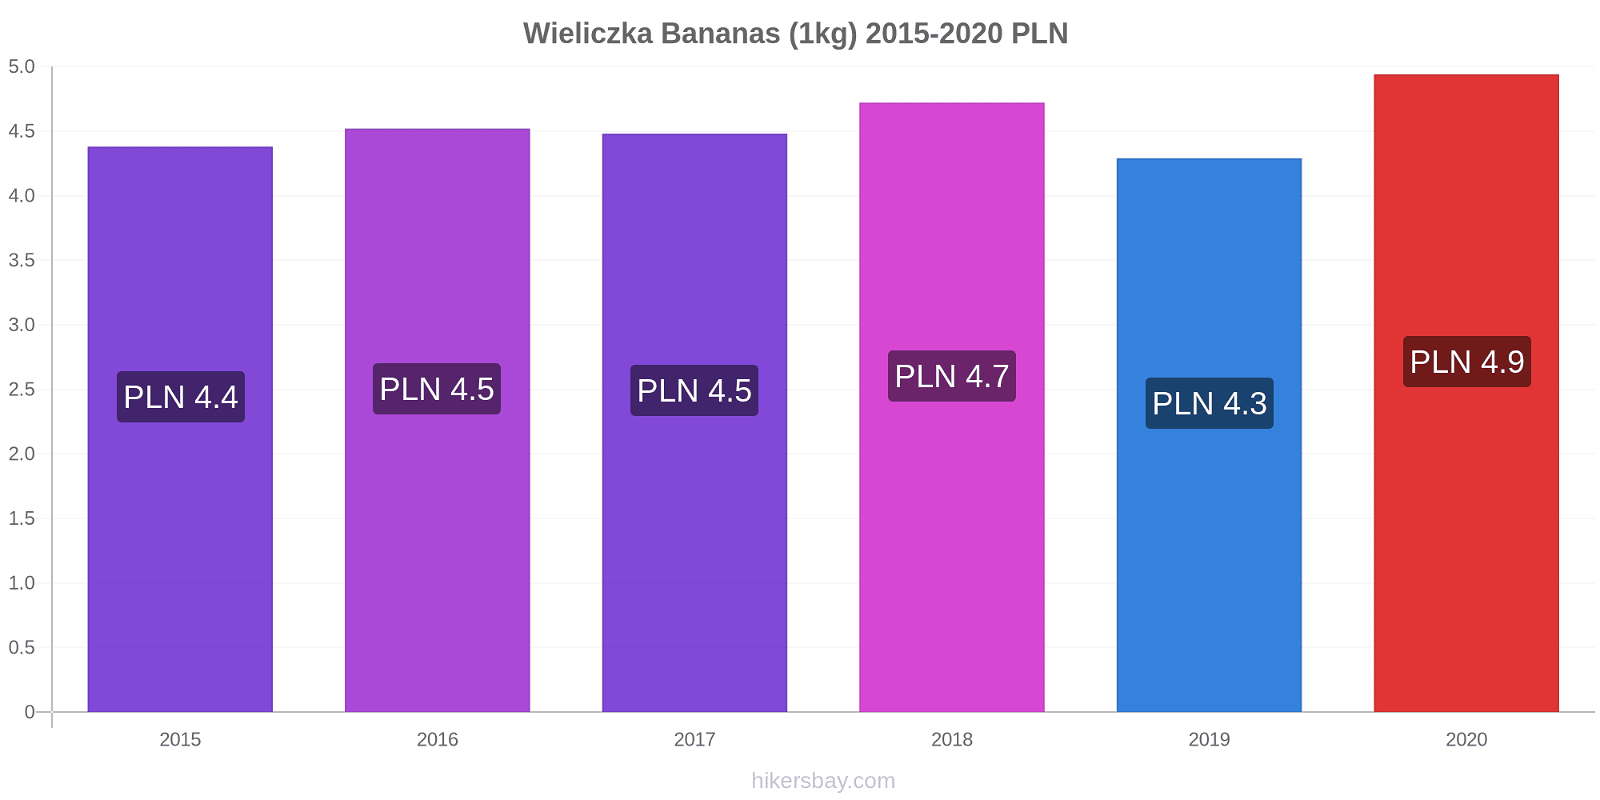 Wieliczka price changes Bananas (1kg) hikersbay.com